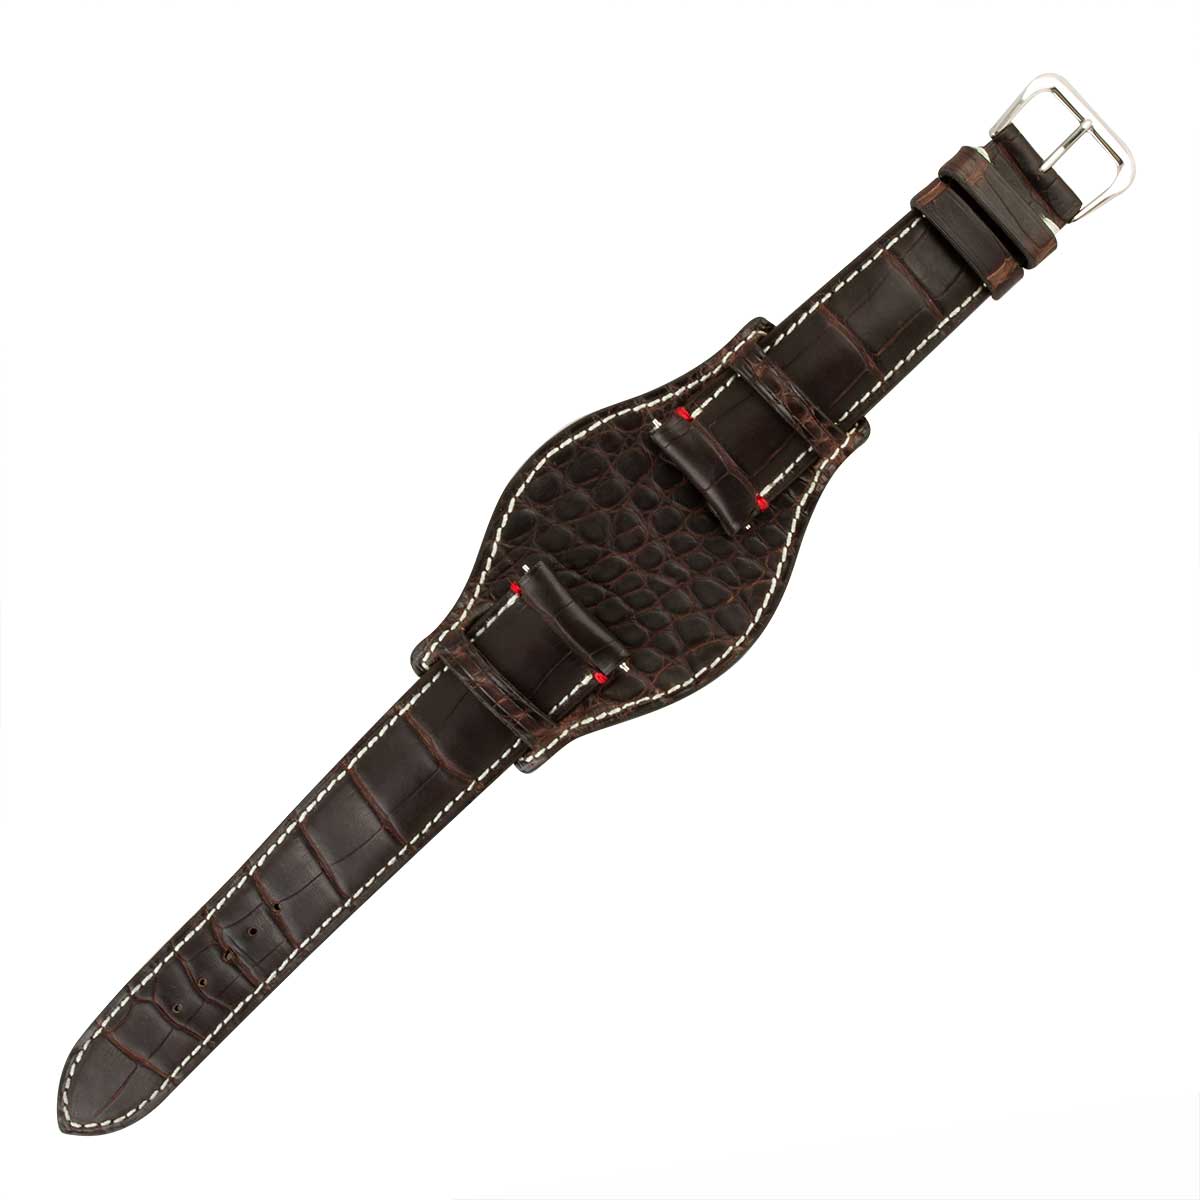 ABP Concept X Hanhart 1882 Bund watch band for 417 ES watches - Waxed Radika alligator